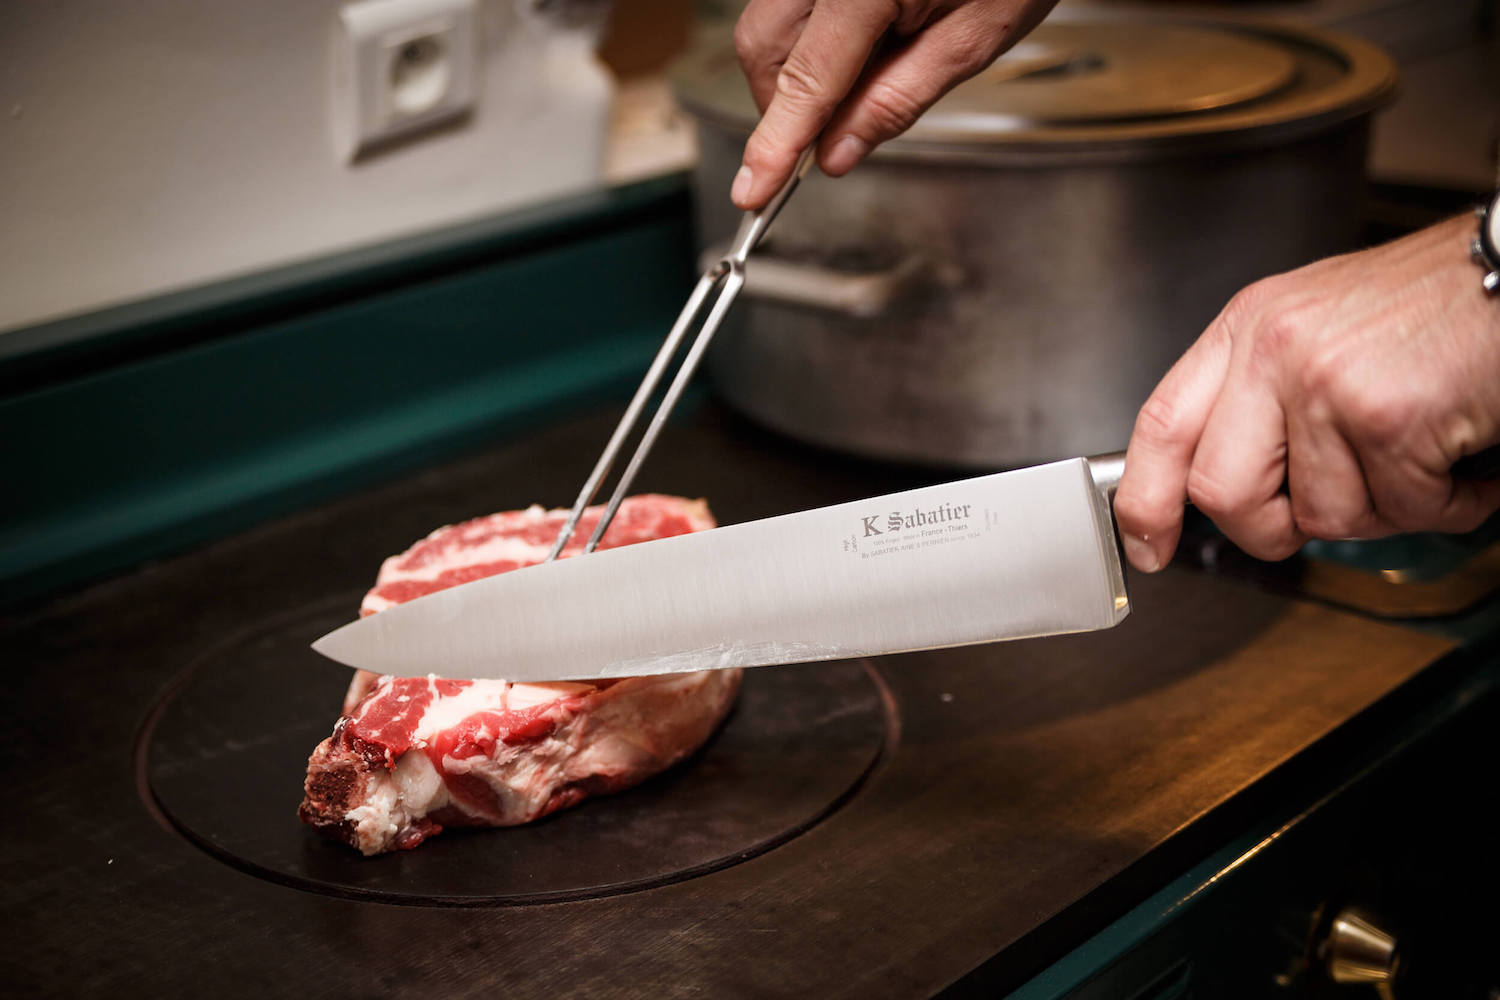 k sabatier knife for the meat